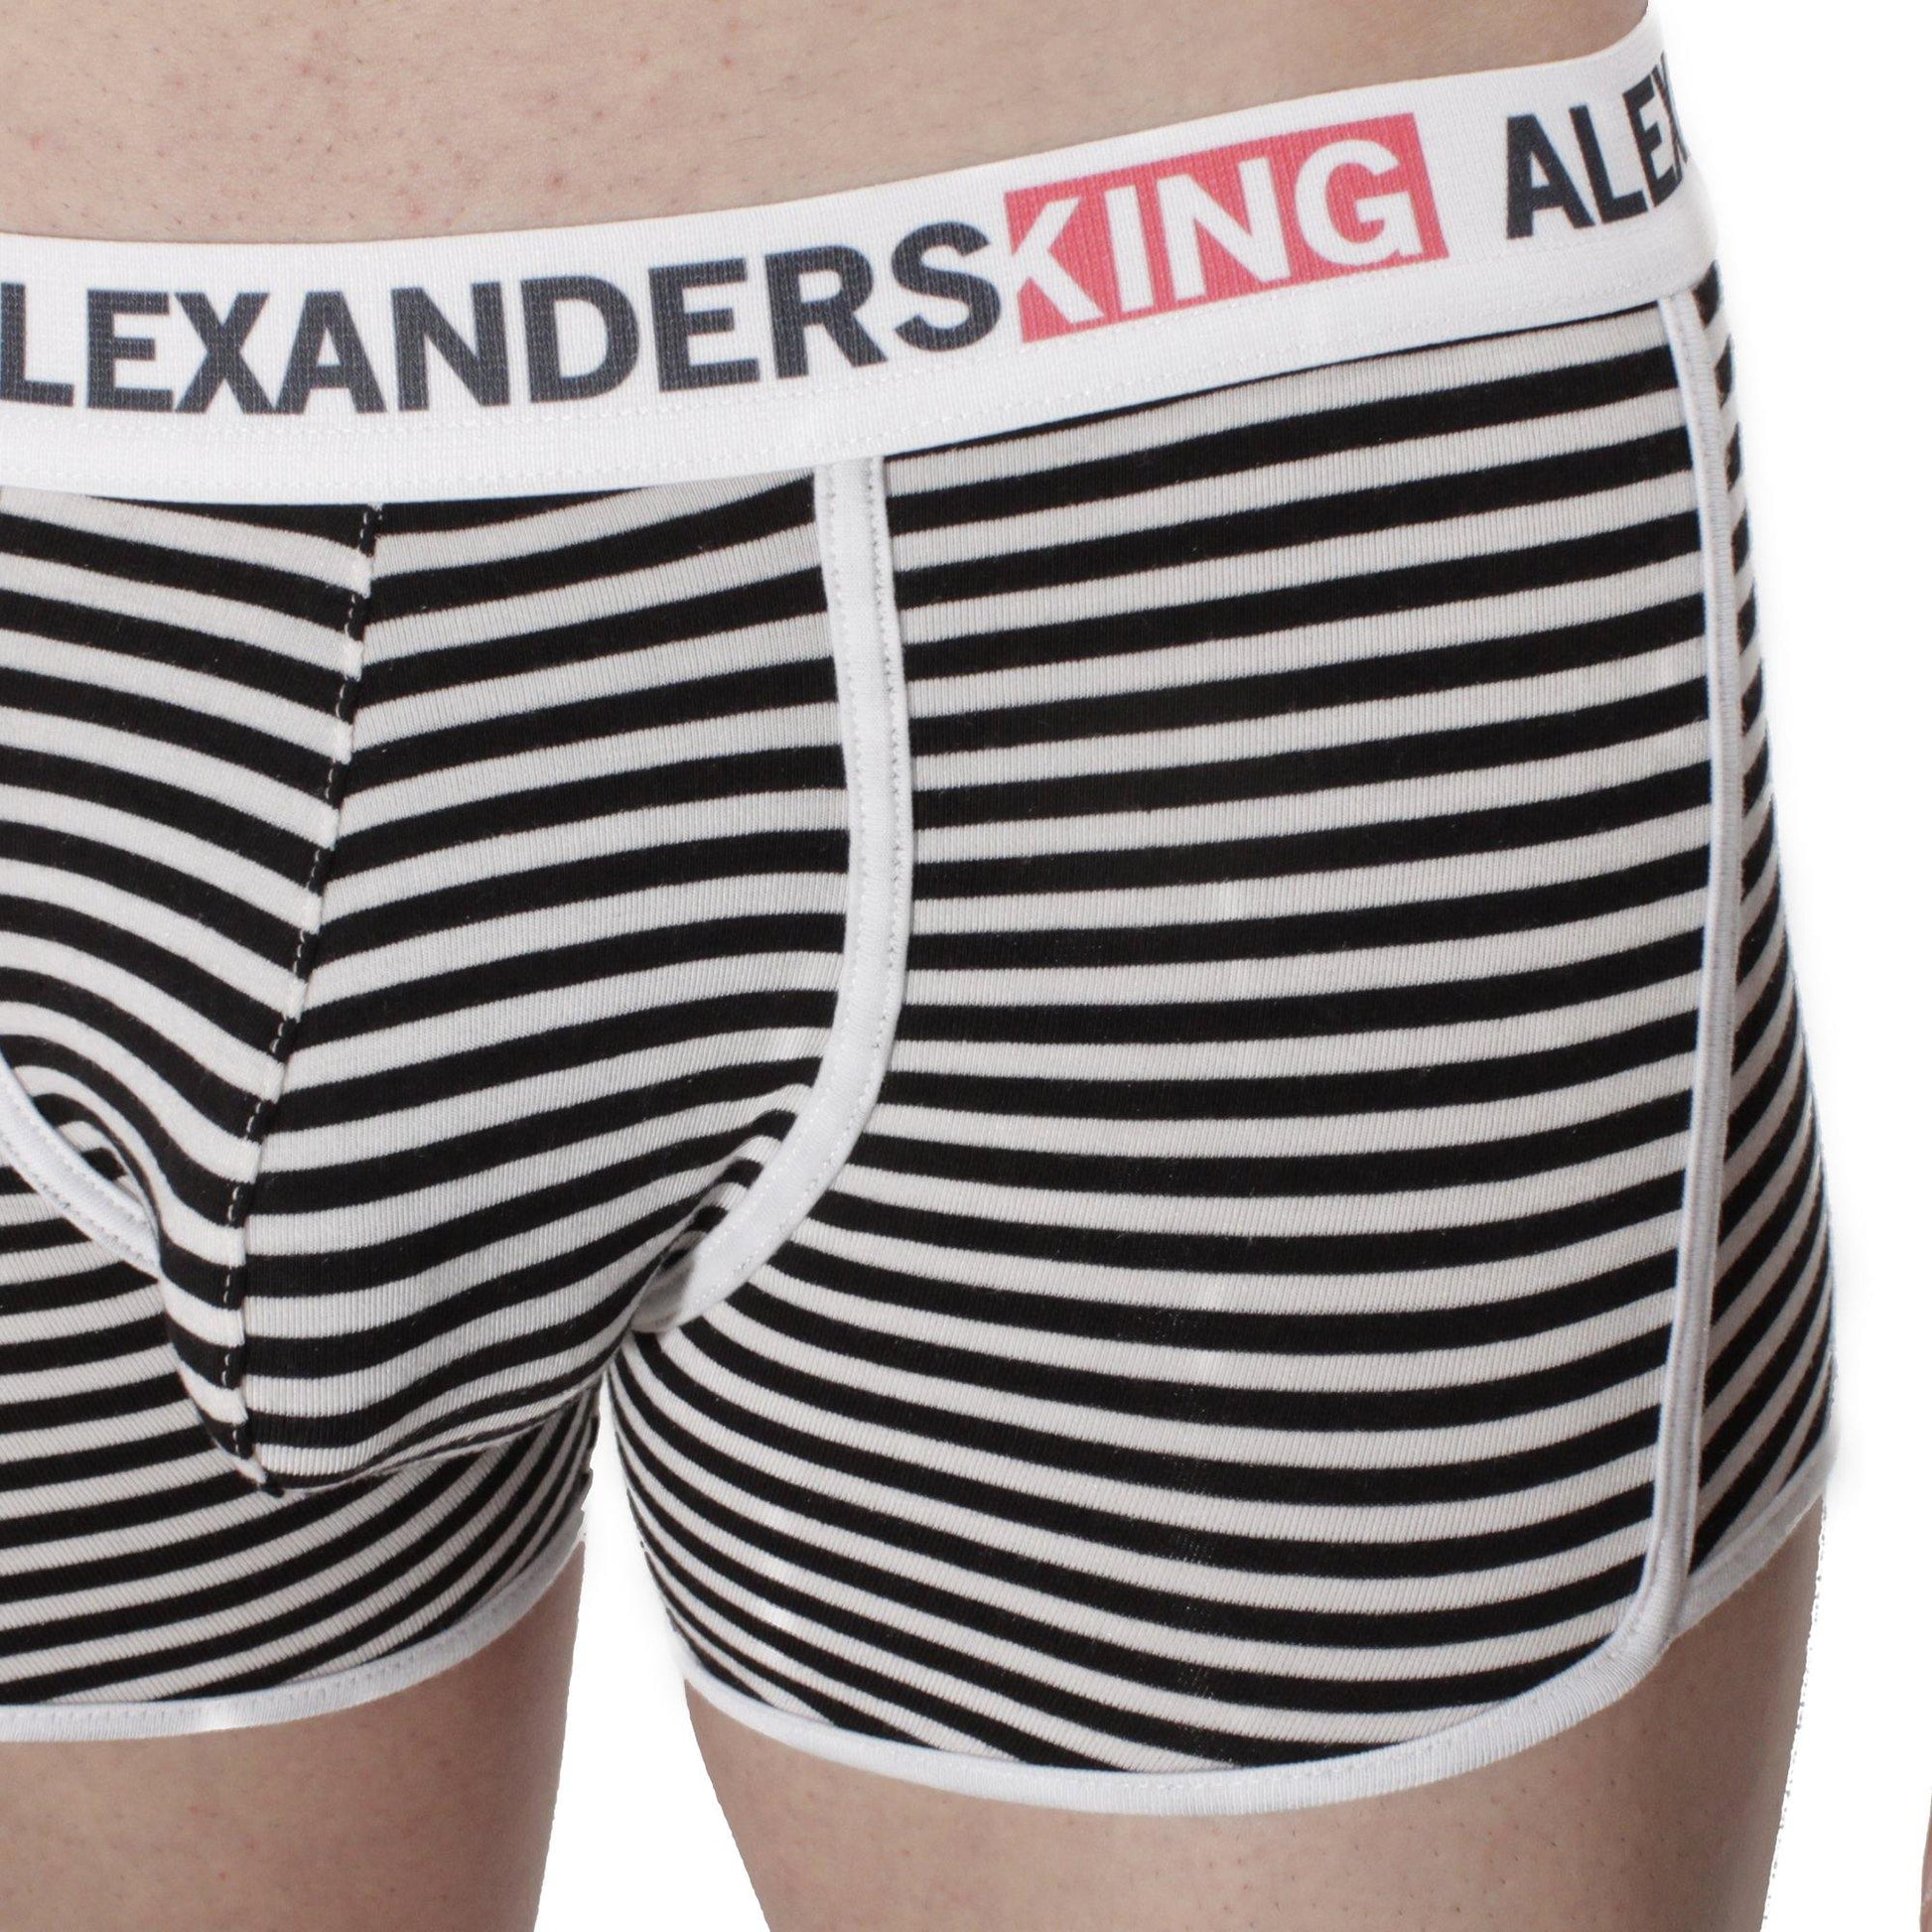 BP0019 - Horizontes Día y noche Comfort - AlexandersKing Underwear